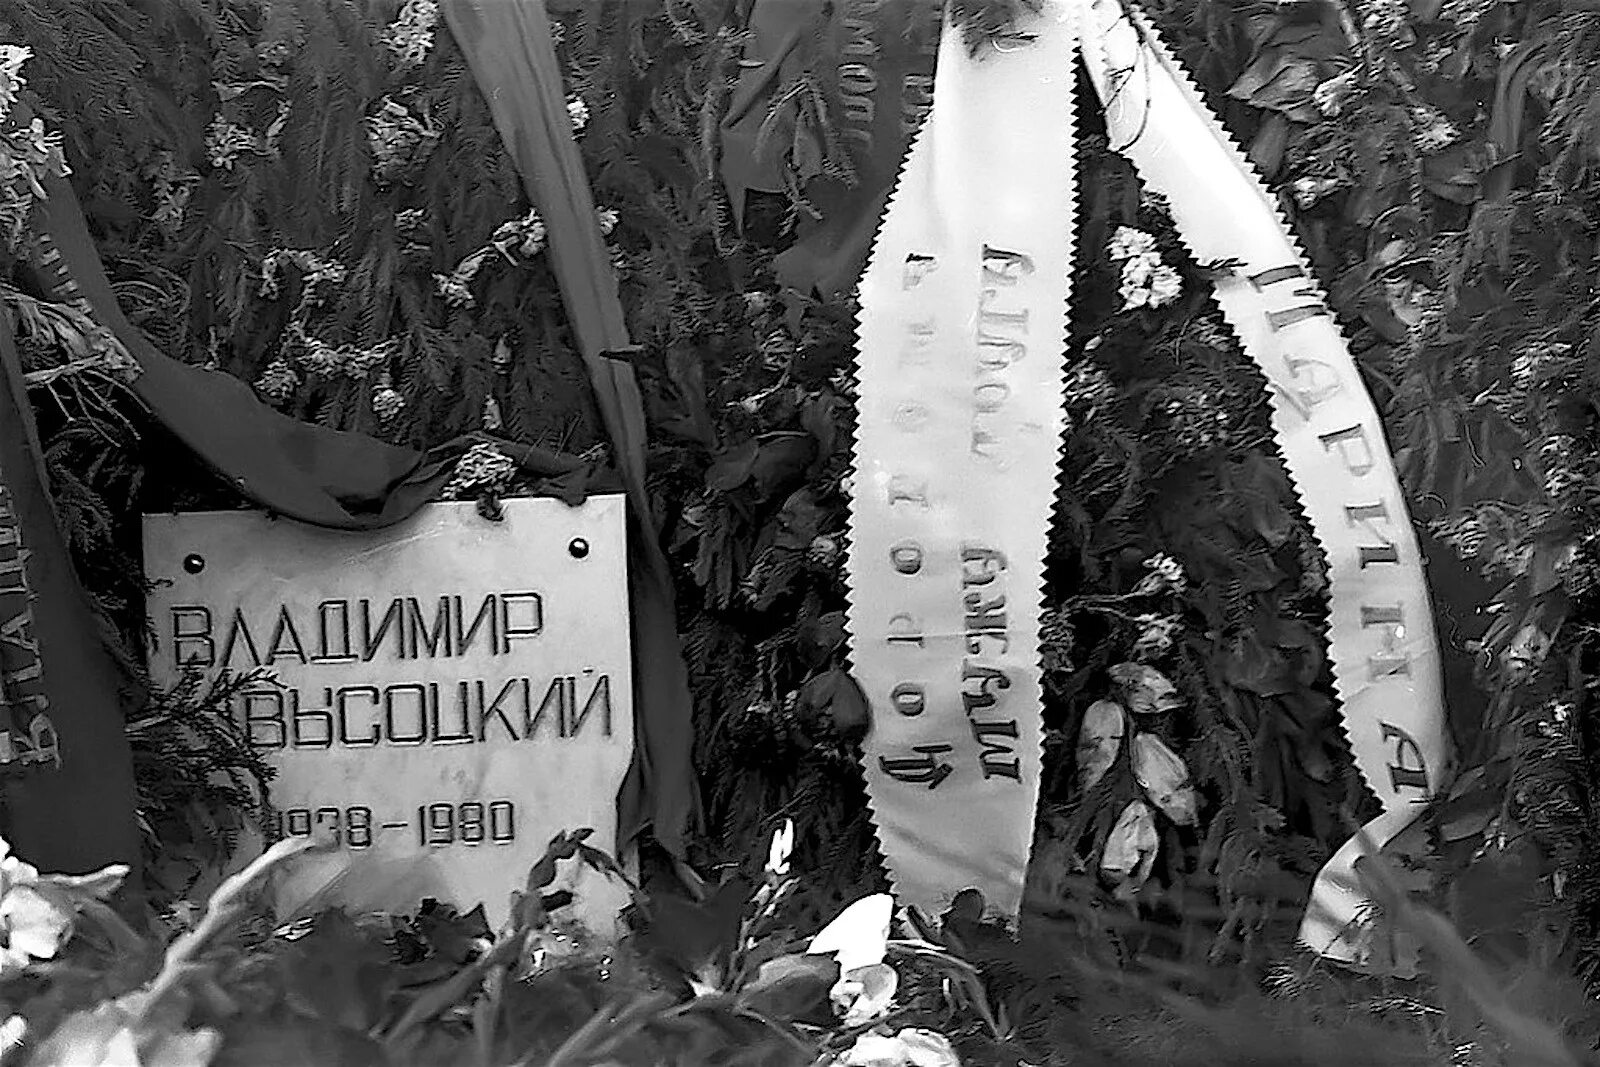 25 Июля 1980 Высоцкий похороны. Москва 1980 похороны Высоцкого. Прощание с владимиром высоцким